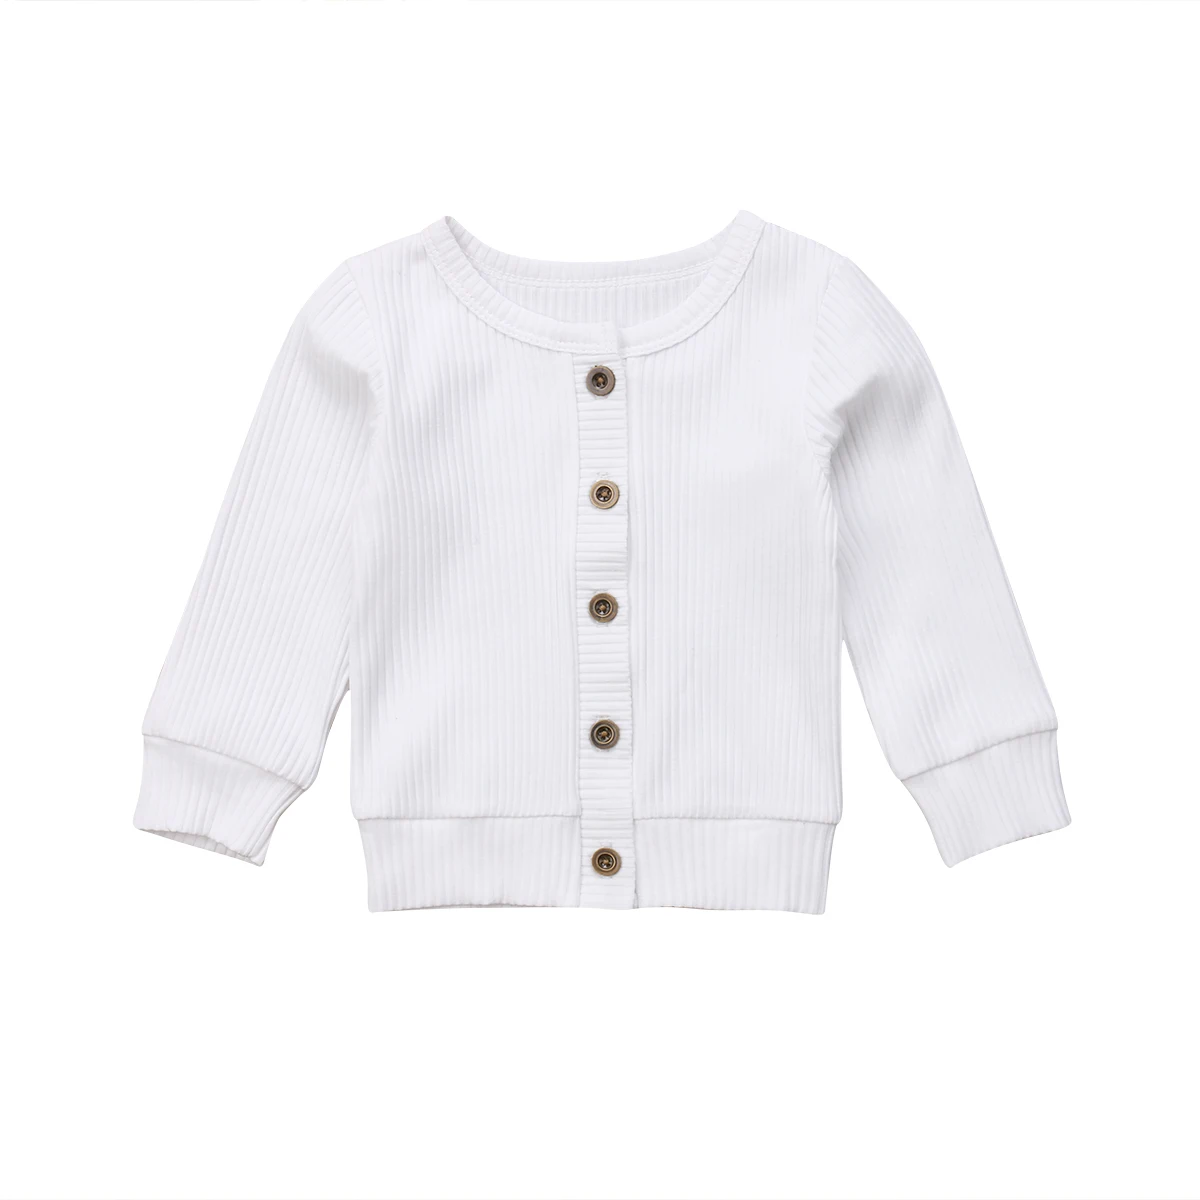 Новая повседневная верхняя одежда для новорожденных девочек и мальчиков, верхняя одежда из хлопка с длинными рукавами, модная одежда для детей от 0 до 24 м - Цвет: Белый